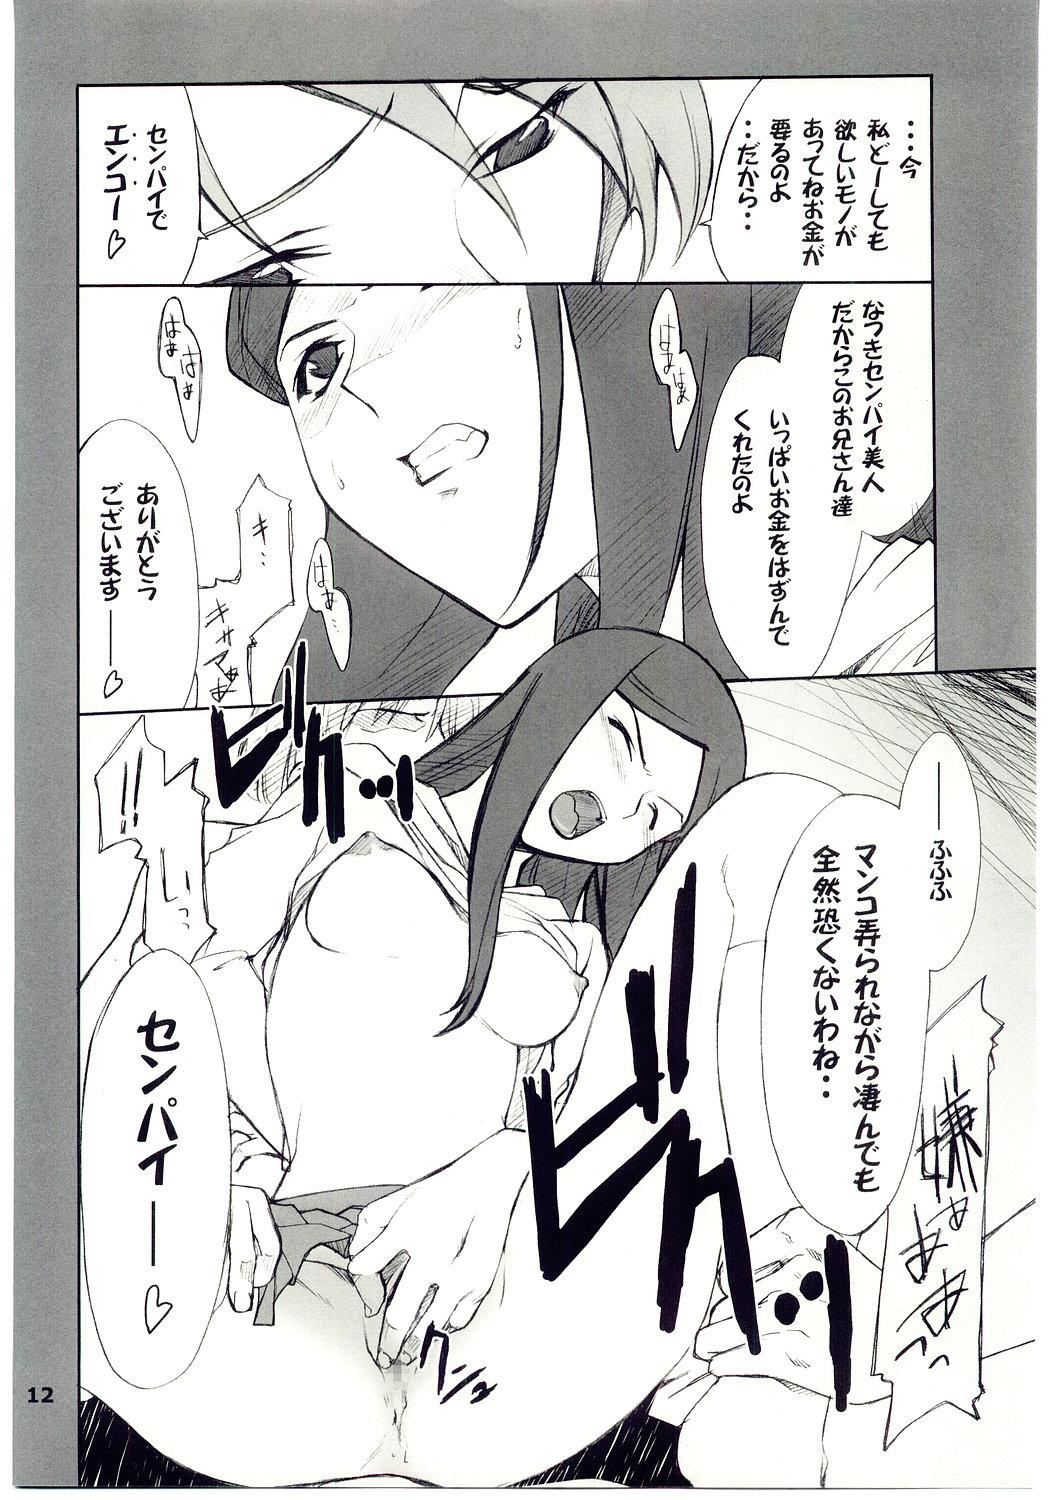 Teenies Kuga-chan to Iroiro - Mai hime Camshow - Page 11